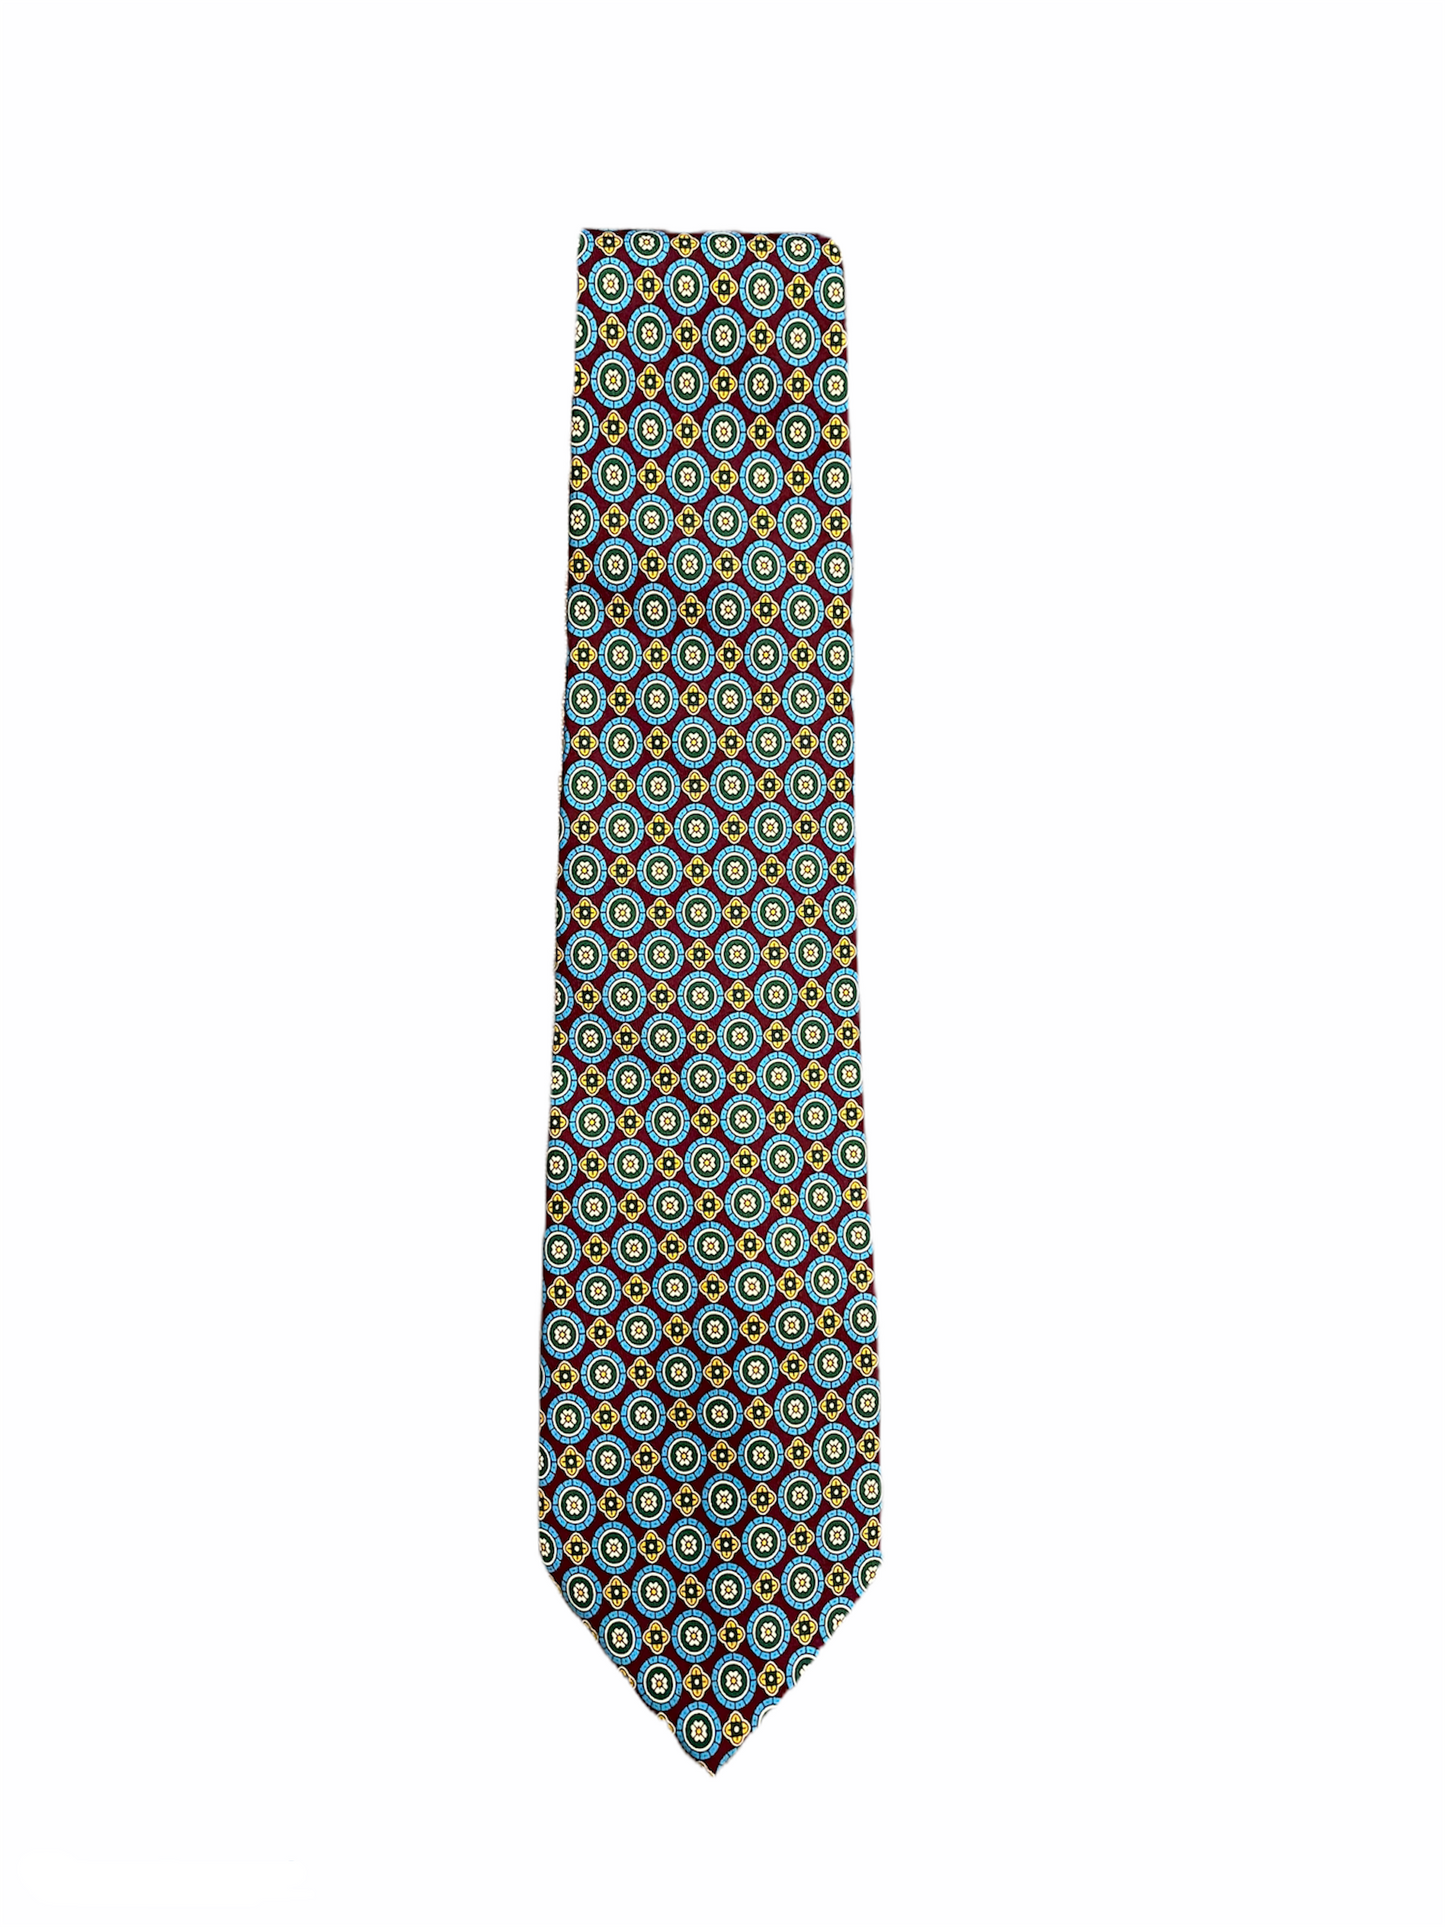 Cravate BRUMMELL, 148 x 9,5 (Longueur cm x Largeur cm), 100 % polyester, bleu à motif. 